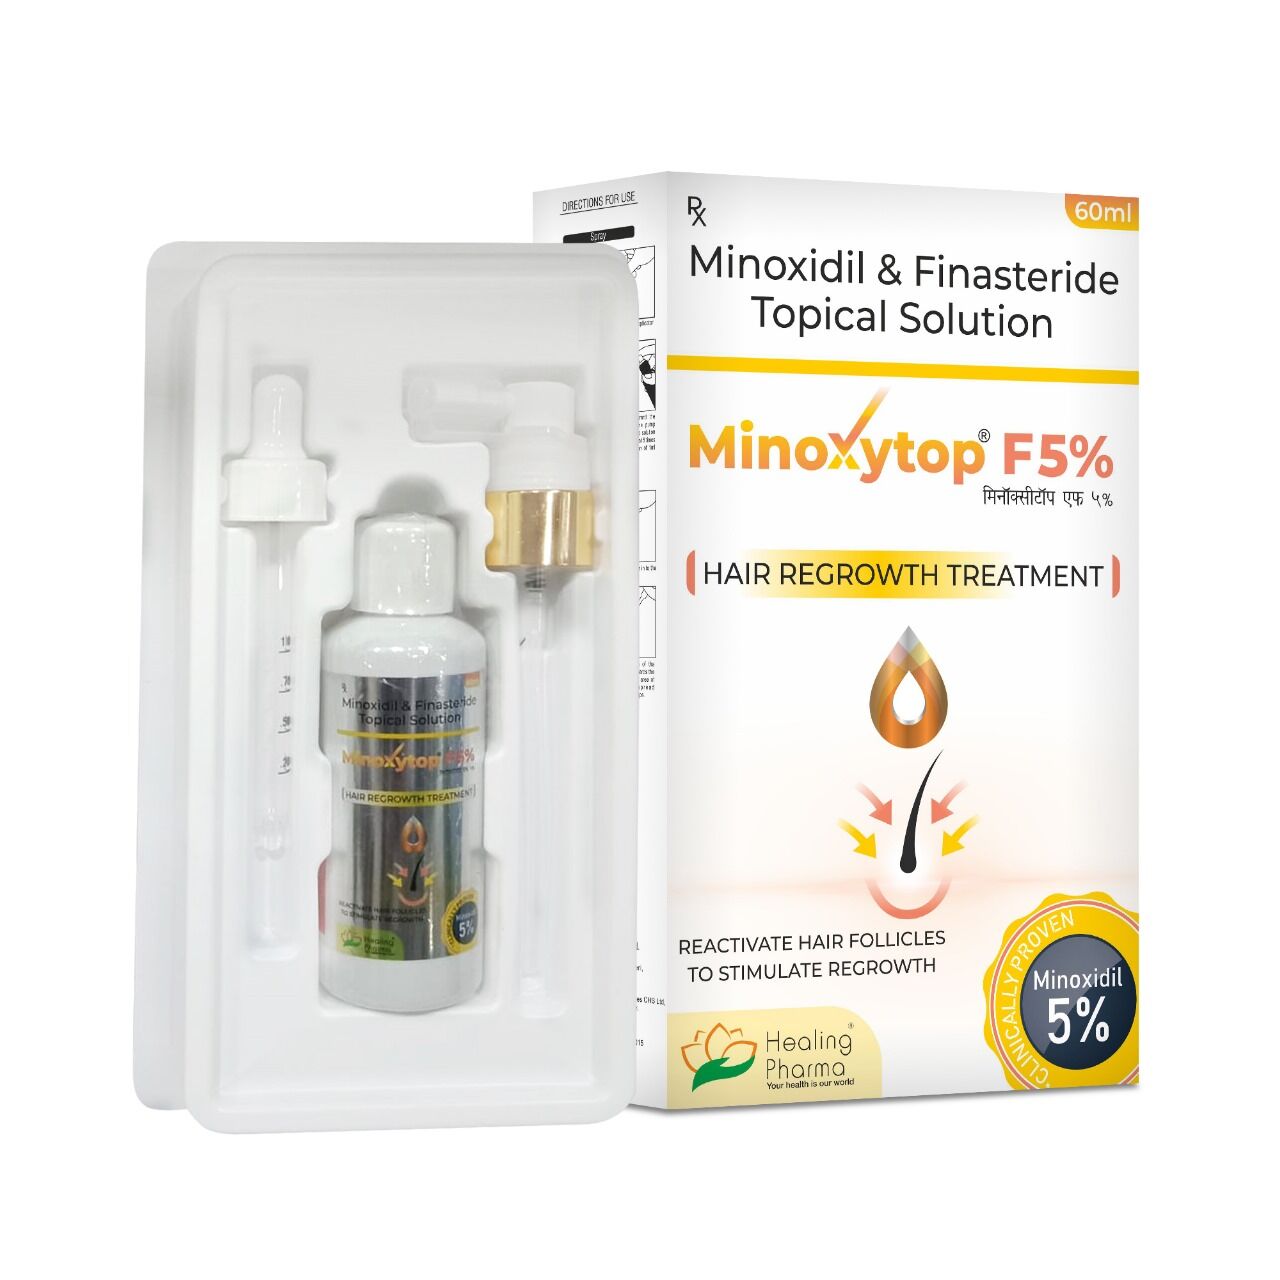 Средство для роста волос Minoxytop F 5% Minoxidil Solution 5% + Finasteride 1% - Mиноксидил 5%